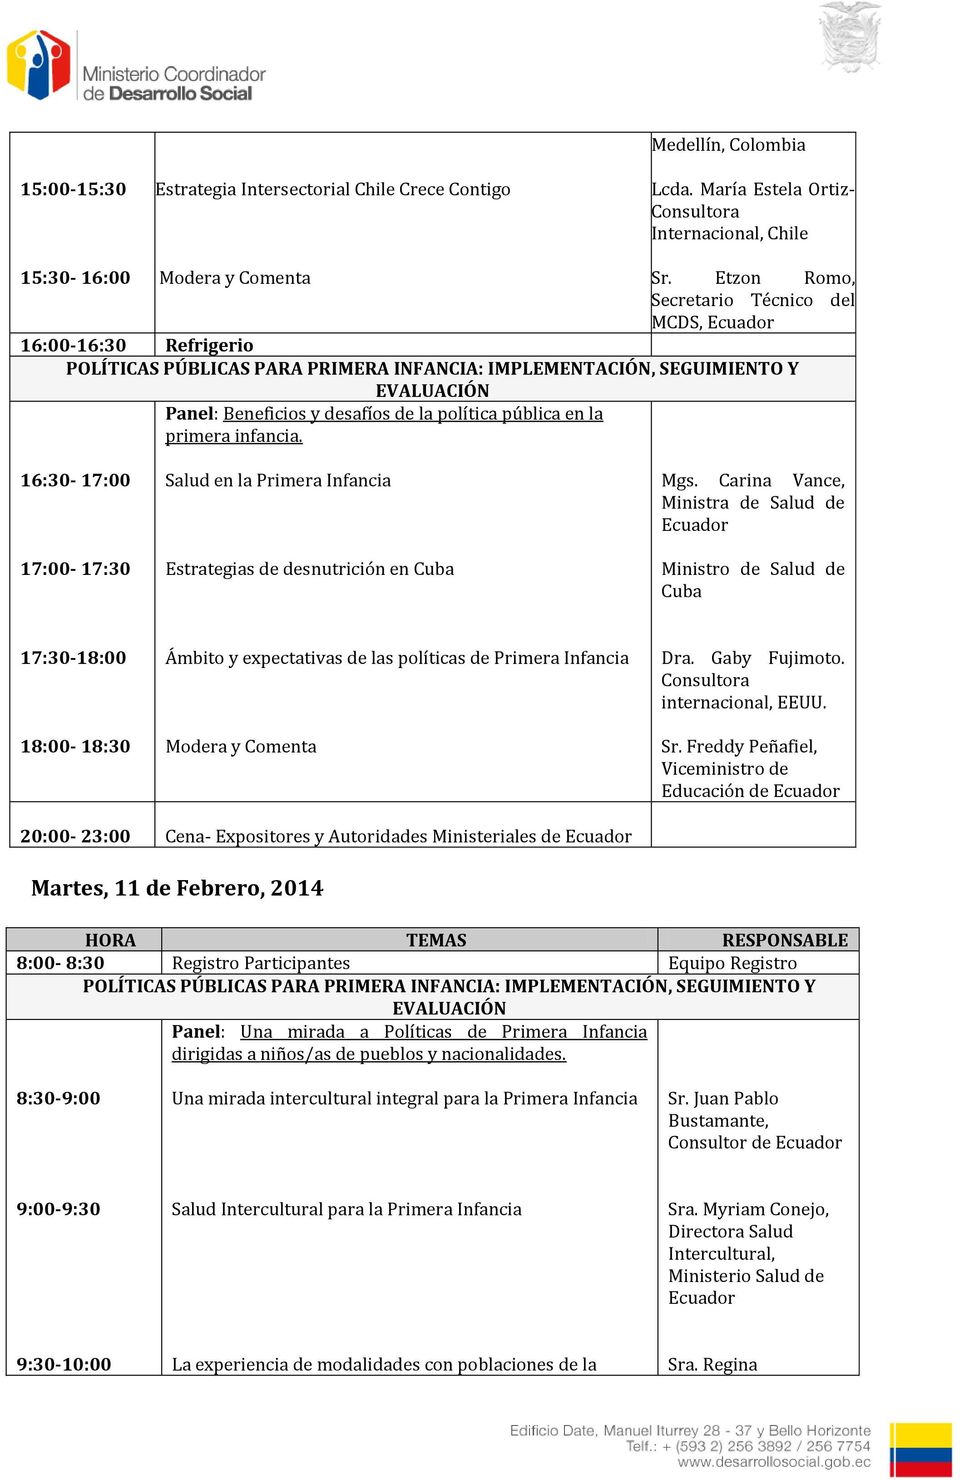 en la primera infancia. 16:30-17:00 17:00-17:30 Salud en la Primera Infancia Estrategias de desnutrición en Cuba Mgs.